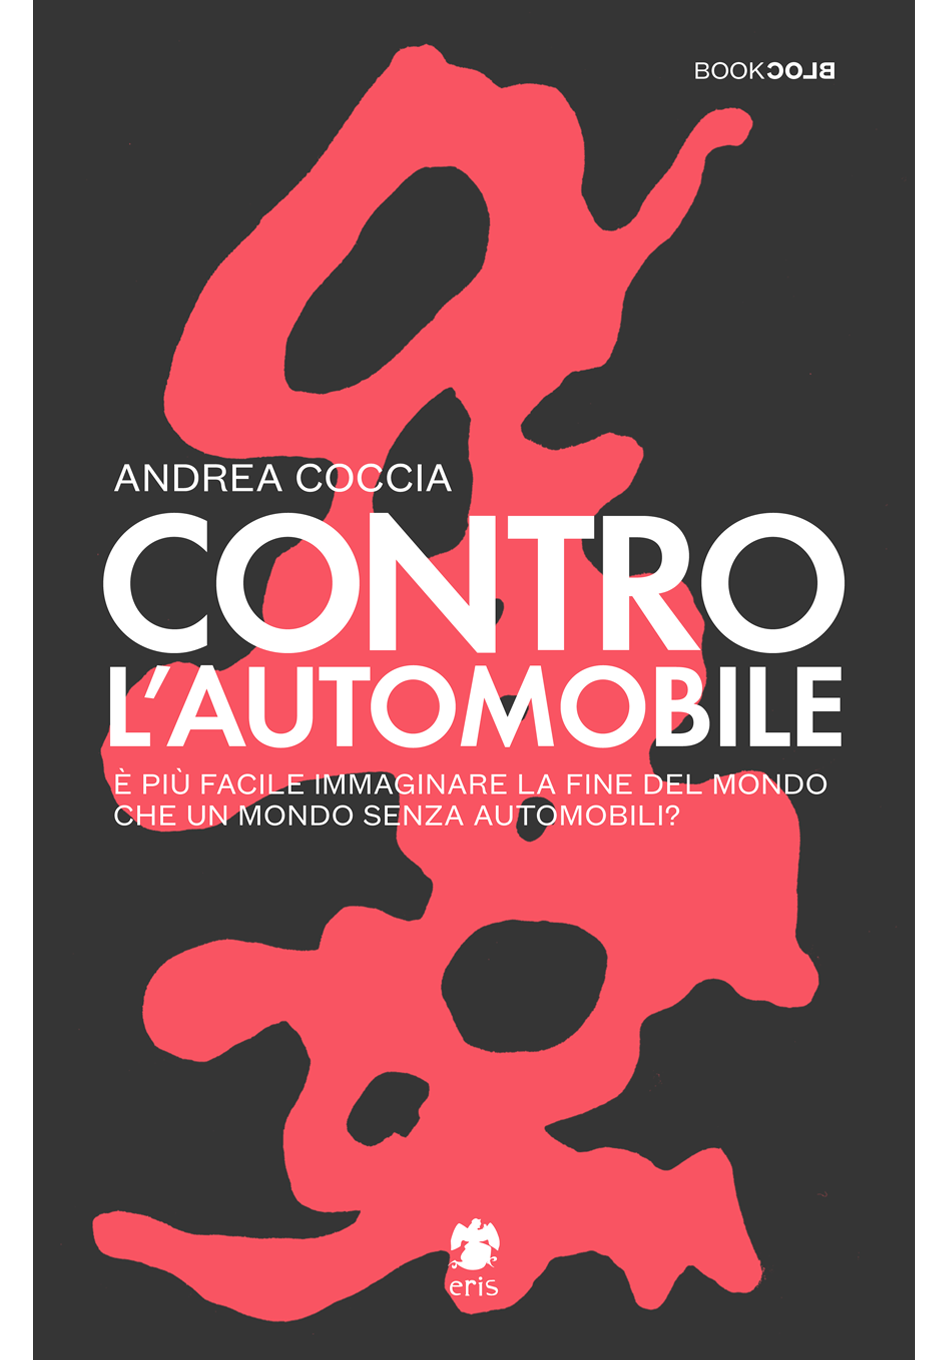 Andrea Coccia: Contro l'automobile (Paperback, Italian language)